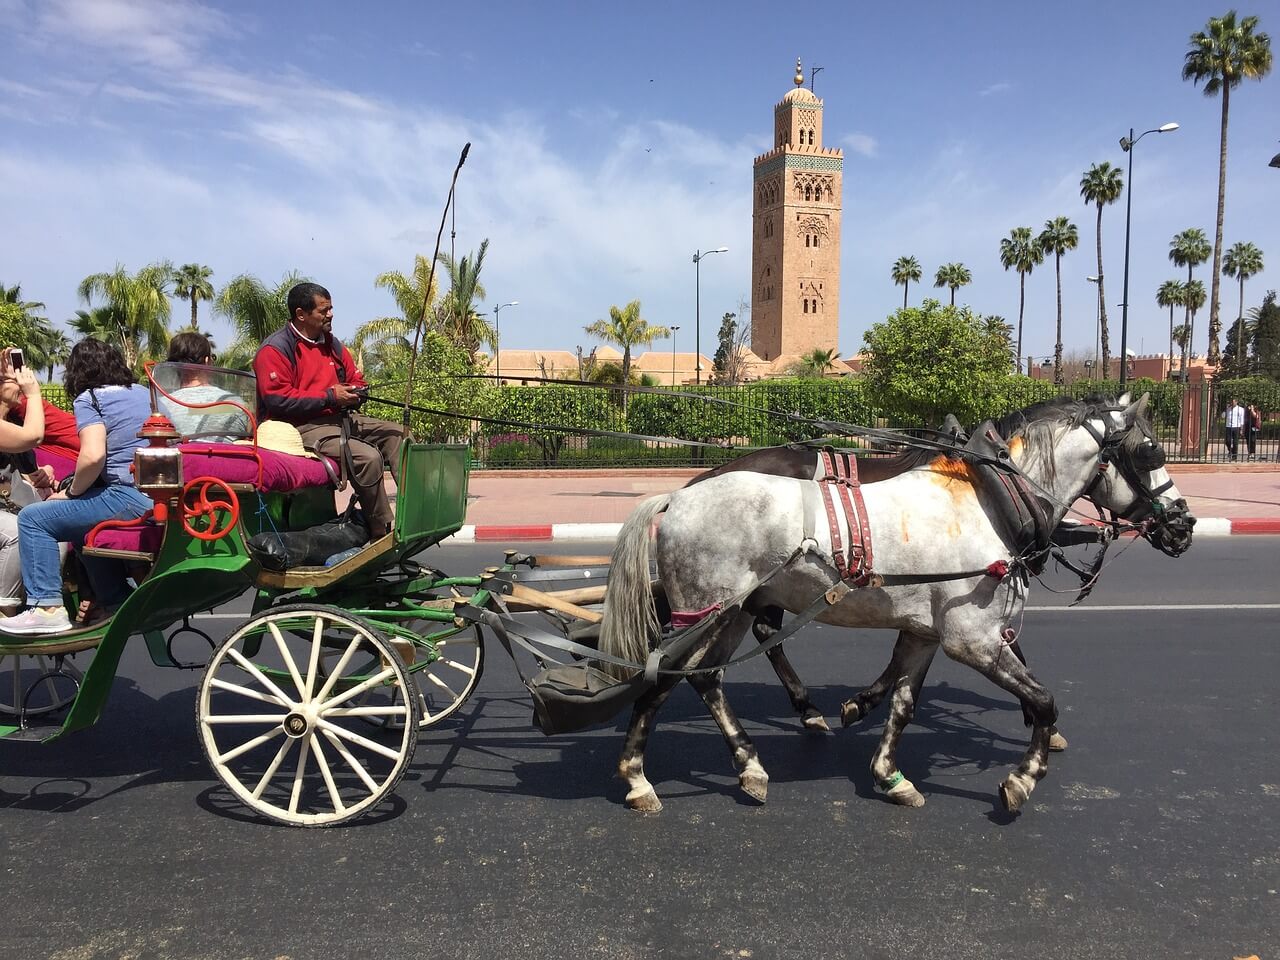 Se déplacer à Marrakech